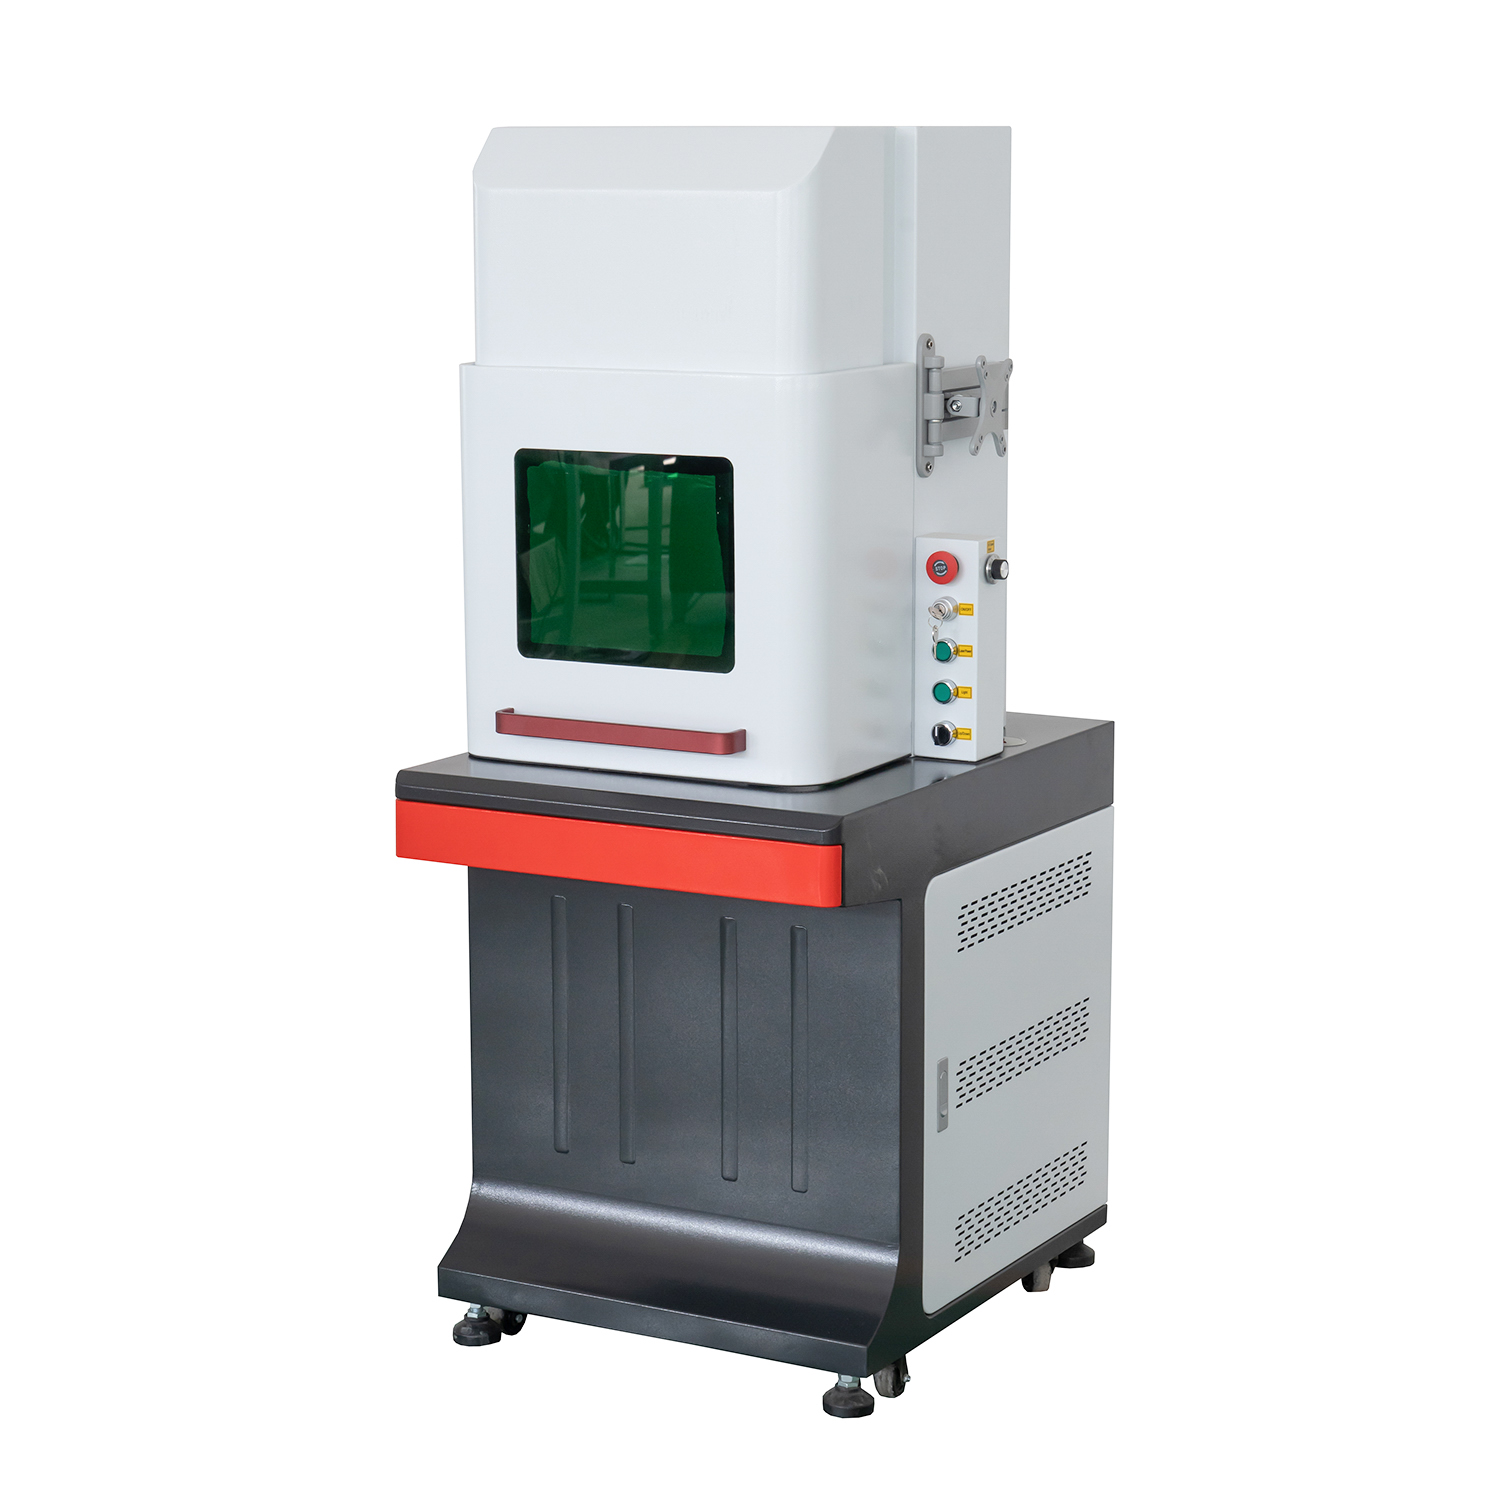 Máquina de marcação a laser de fibra cnc de desktop fechada completa com certificado ce e fda